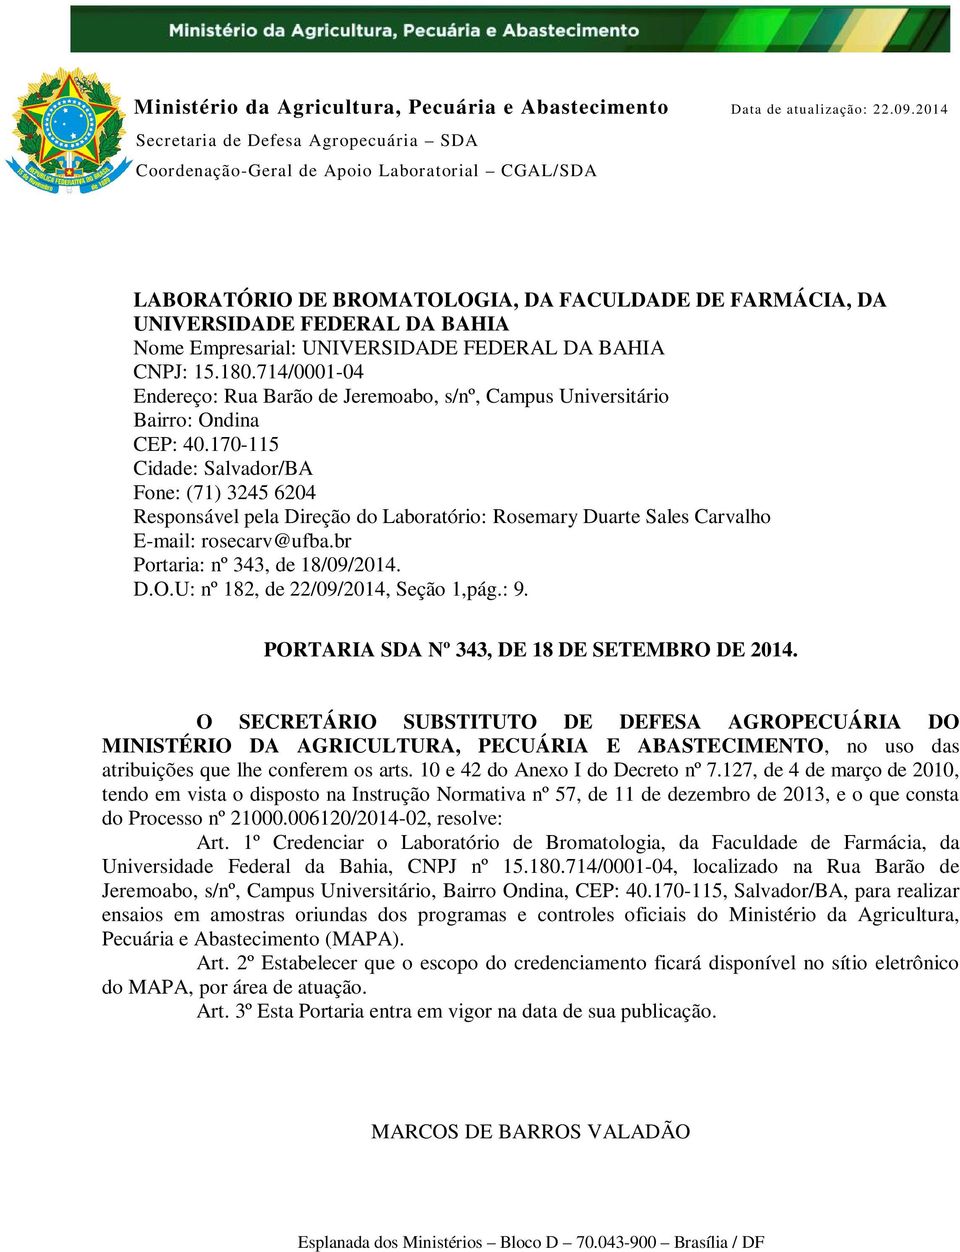 170-115 Cidade: Salvador/BA Fone: (71) 3245 6204 Responsável pela Direção do Laboratório: E-mail: rosecarv@ufba.br Portaria: nº 343, de 18/09/2014. D.O.U: nº 182, de 22/09/2014, Seção 1,pág.: 9.